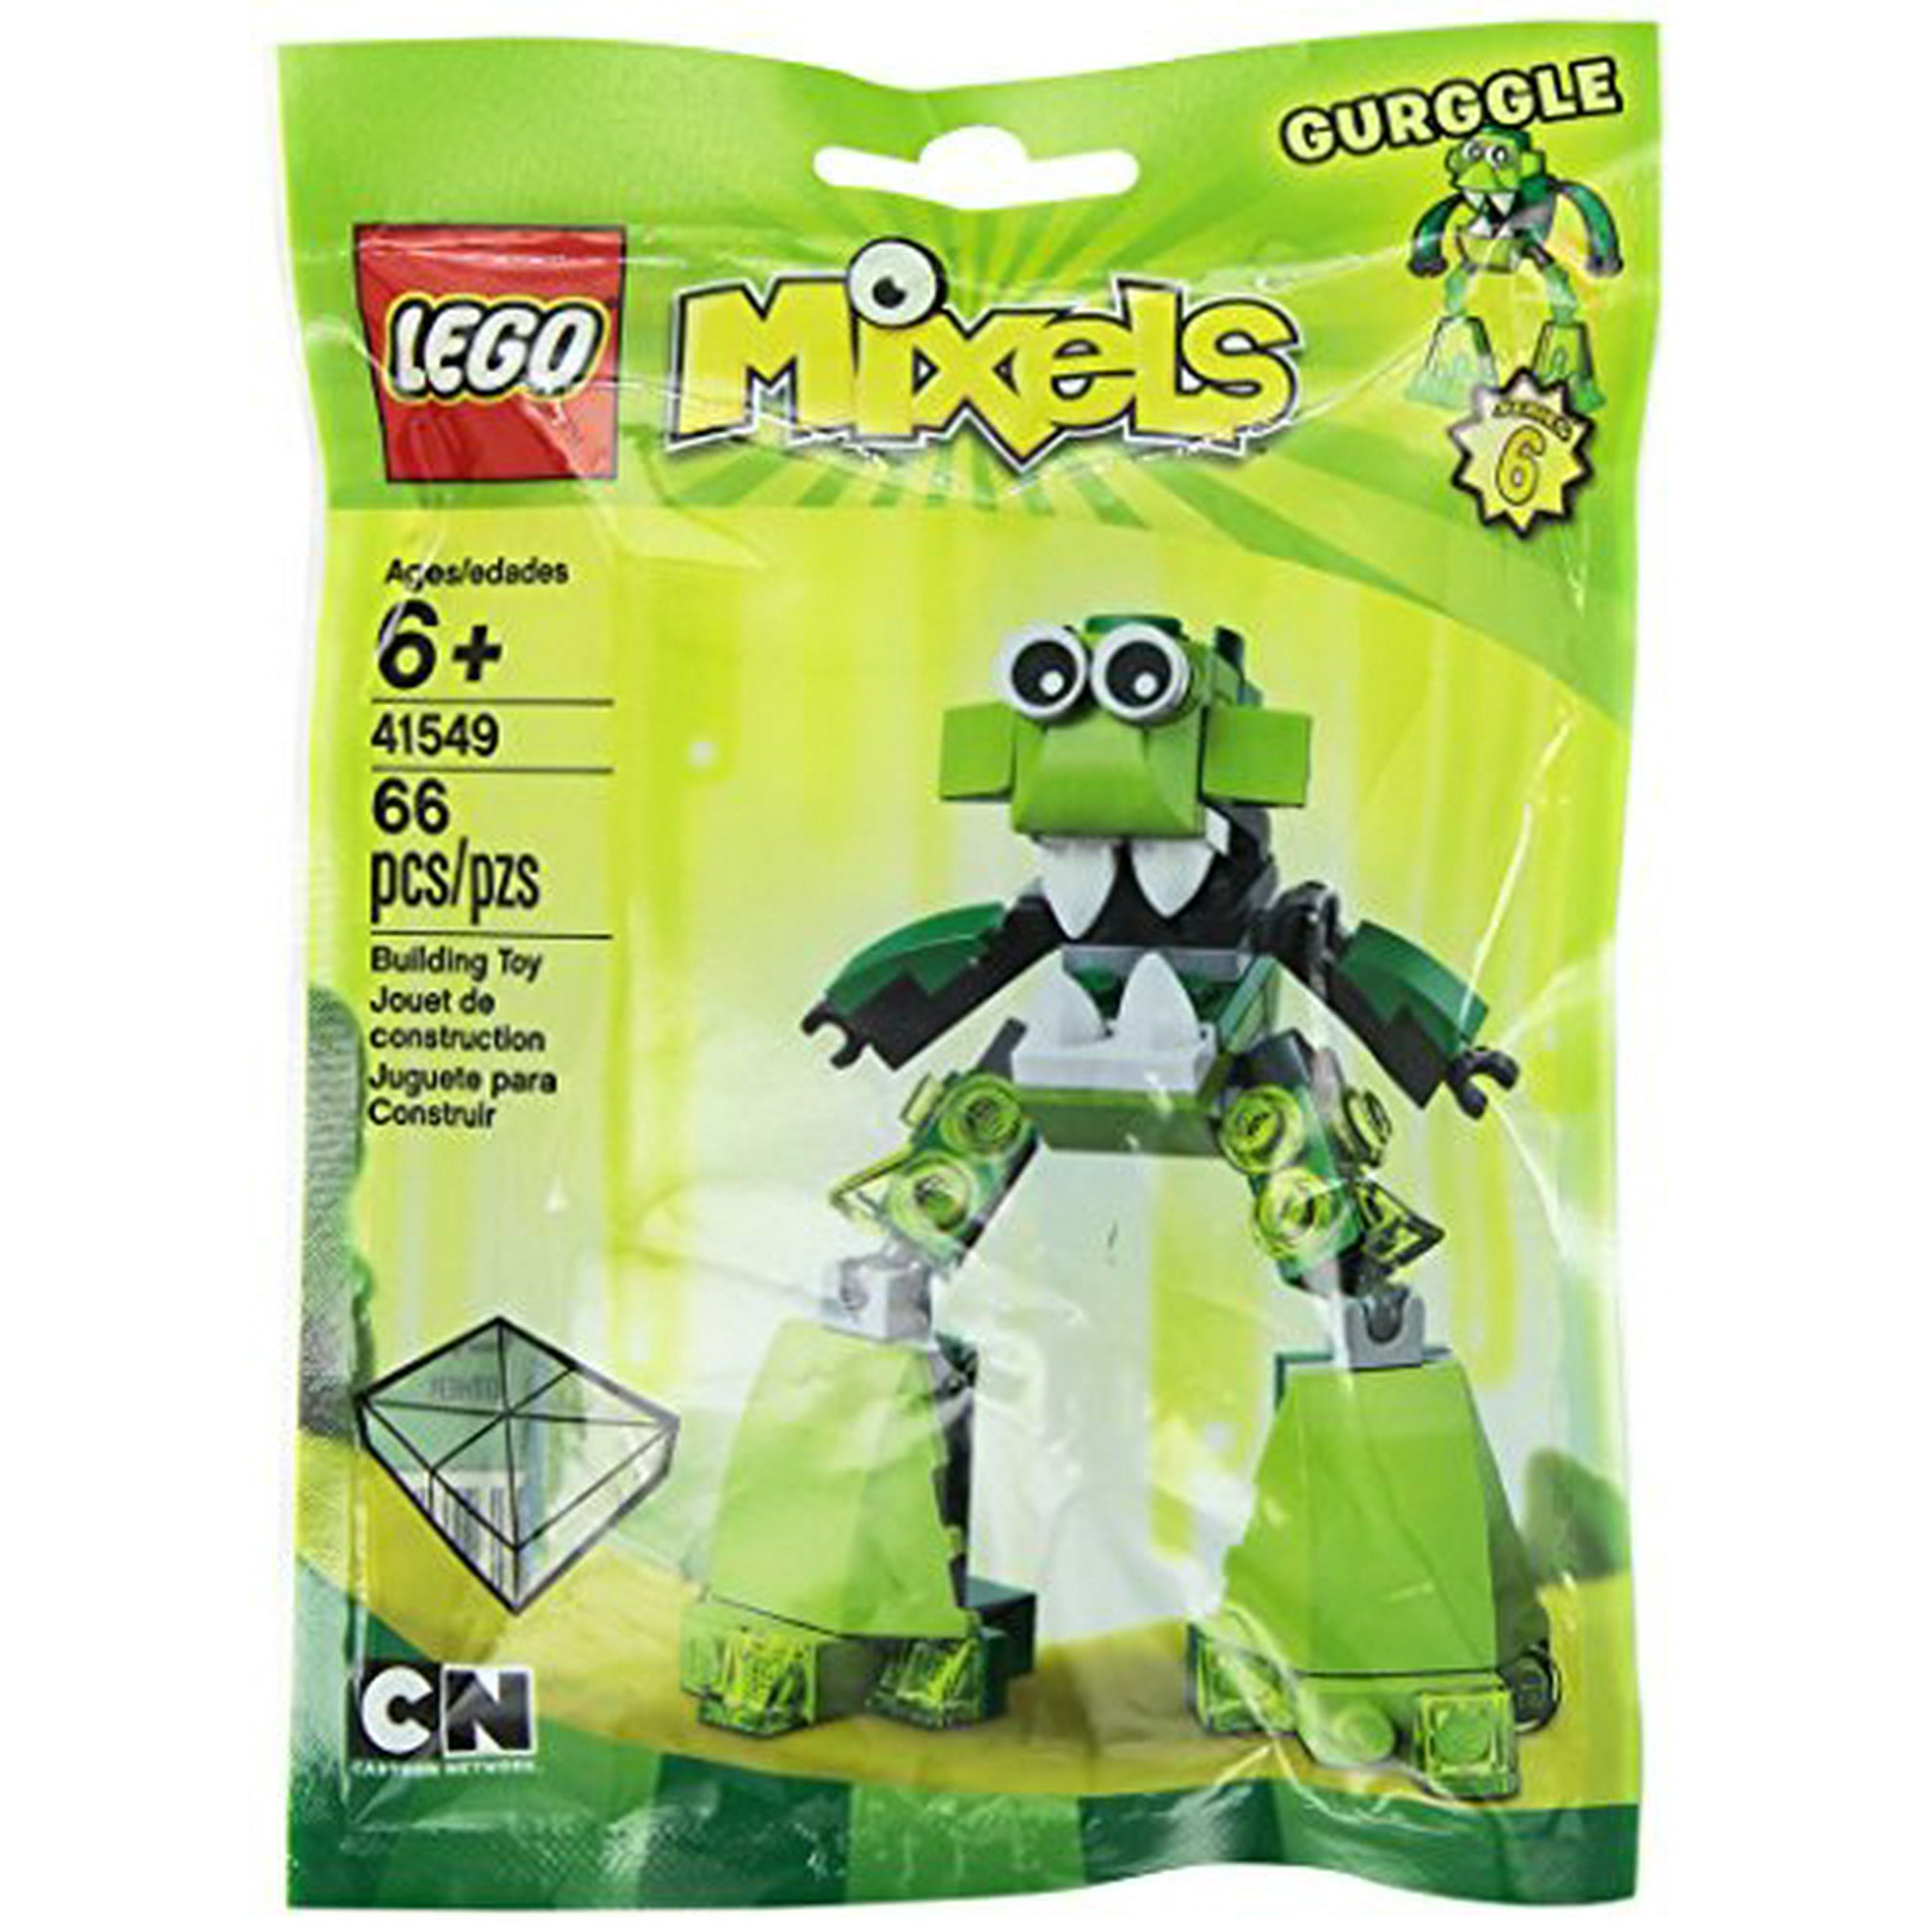 LEgO Mixels Mixel gurggle 41549 Building Kit | Walmart Canada